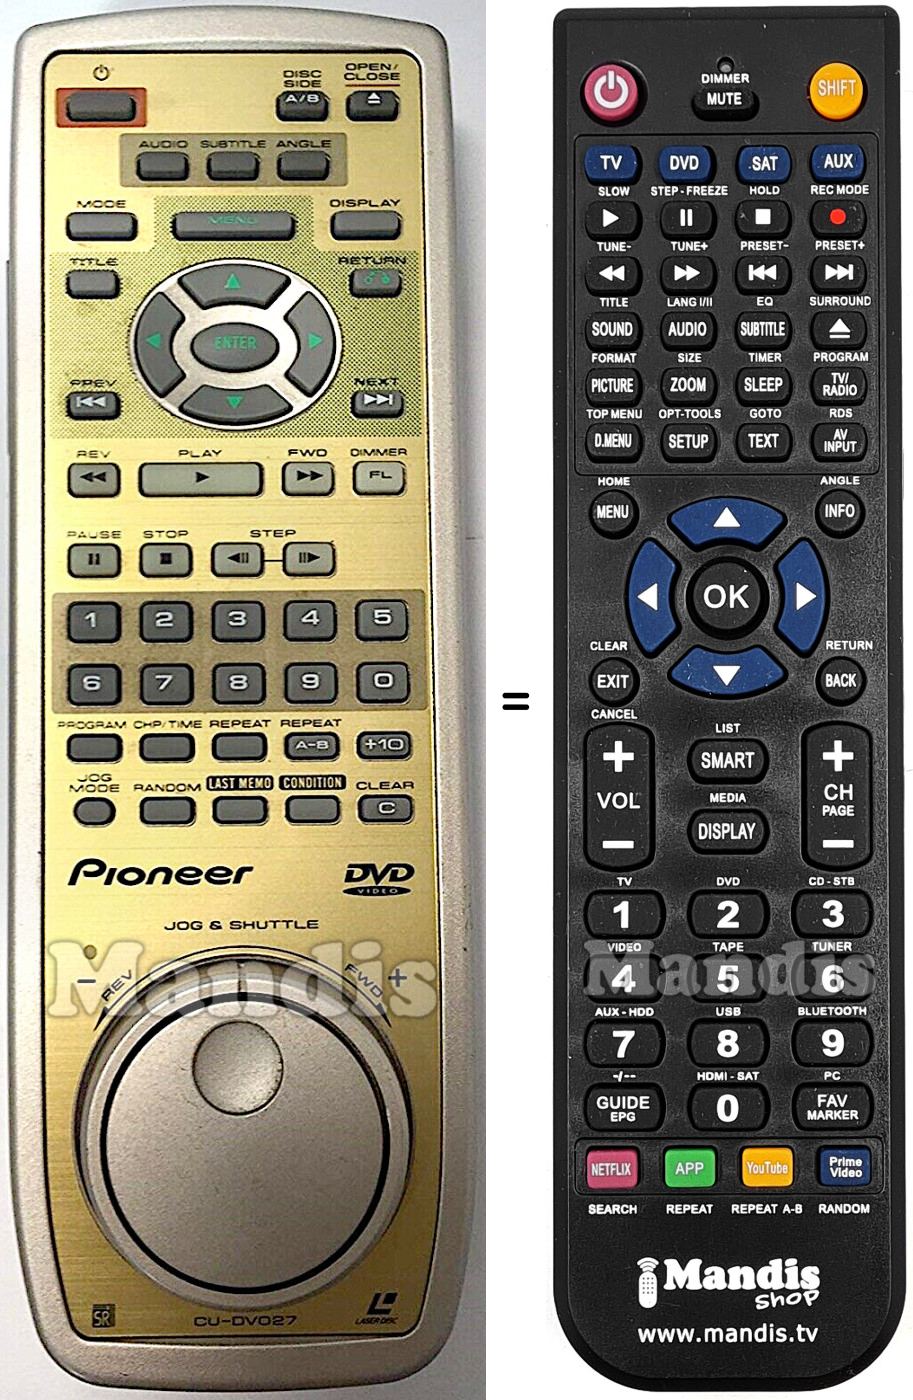 Replacement remote control CU-DV027